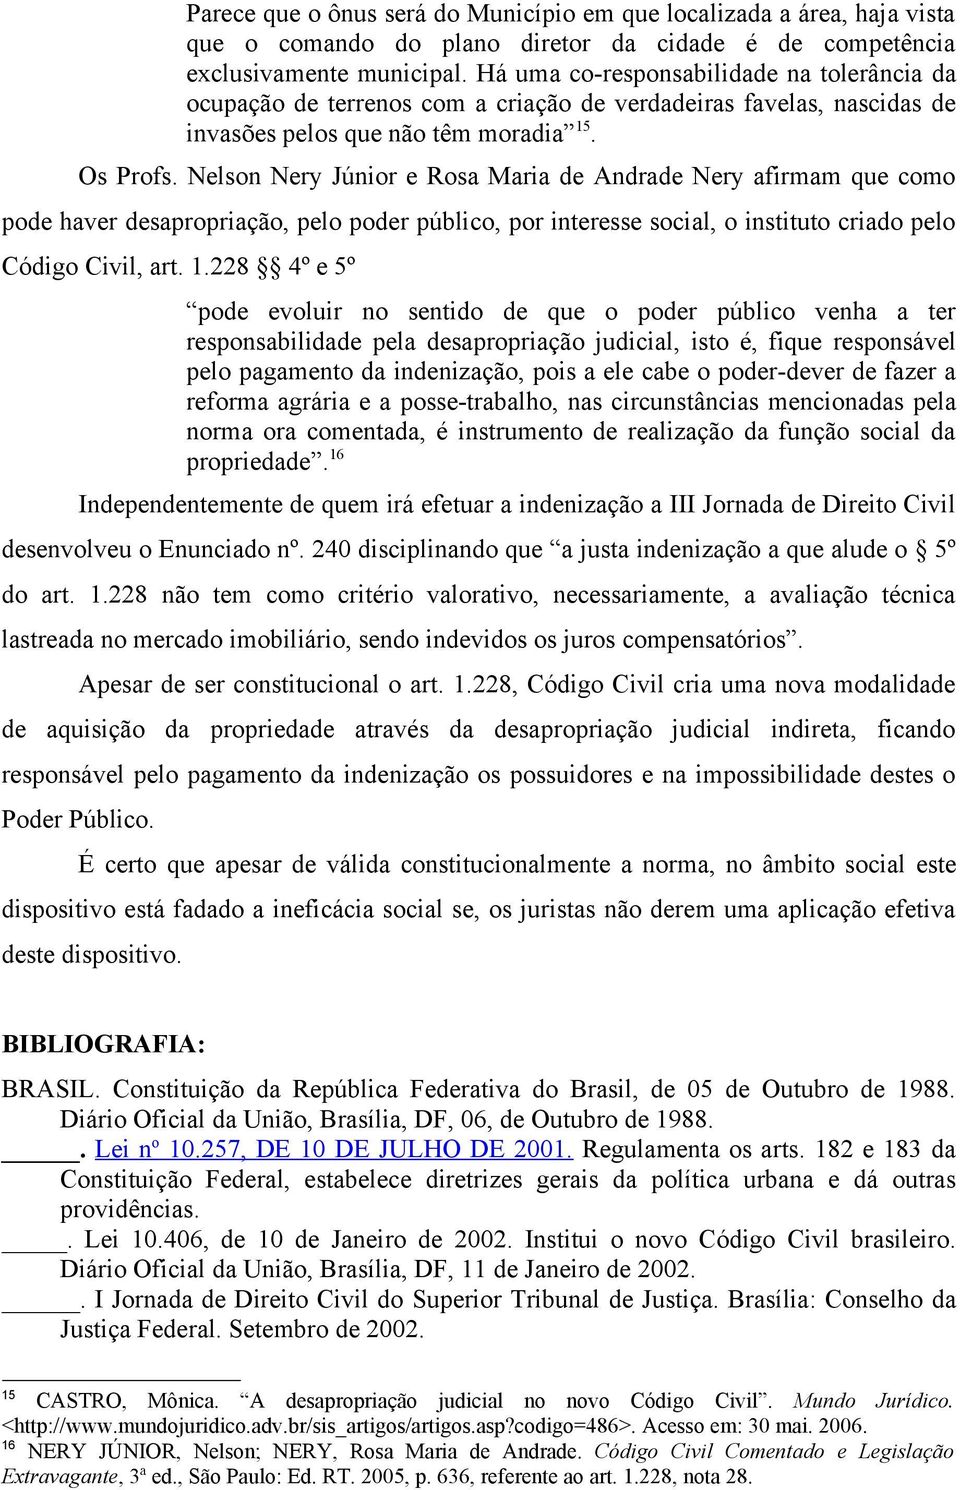 Nelson Nery Júnior e Rosa Maria de Andrade Nery afirmam que como pode haver desapropriação, pelo poder público, por interesse social, o instituto criado pelo Código Civil, art. 1.